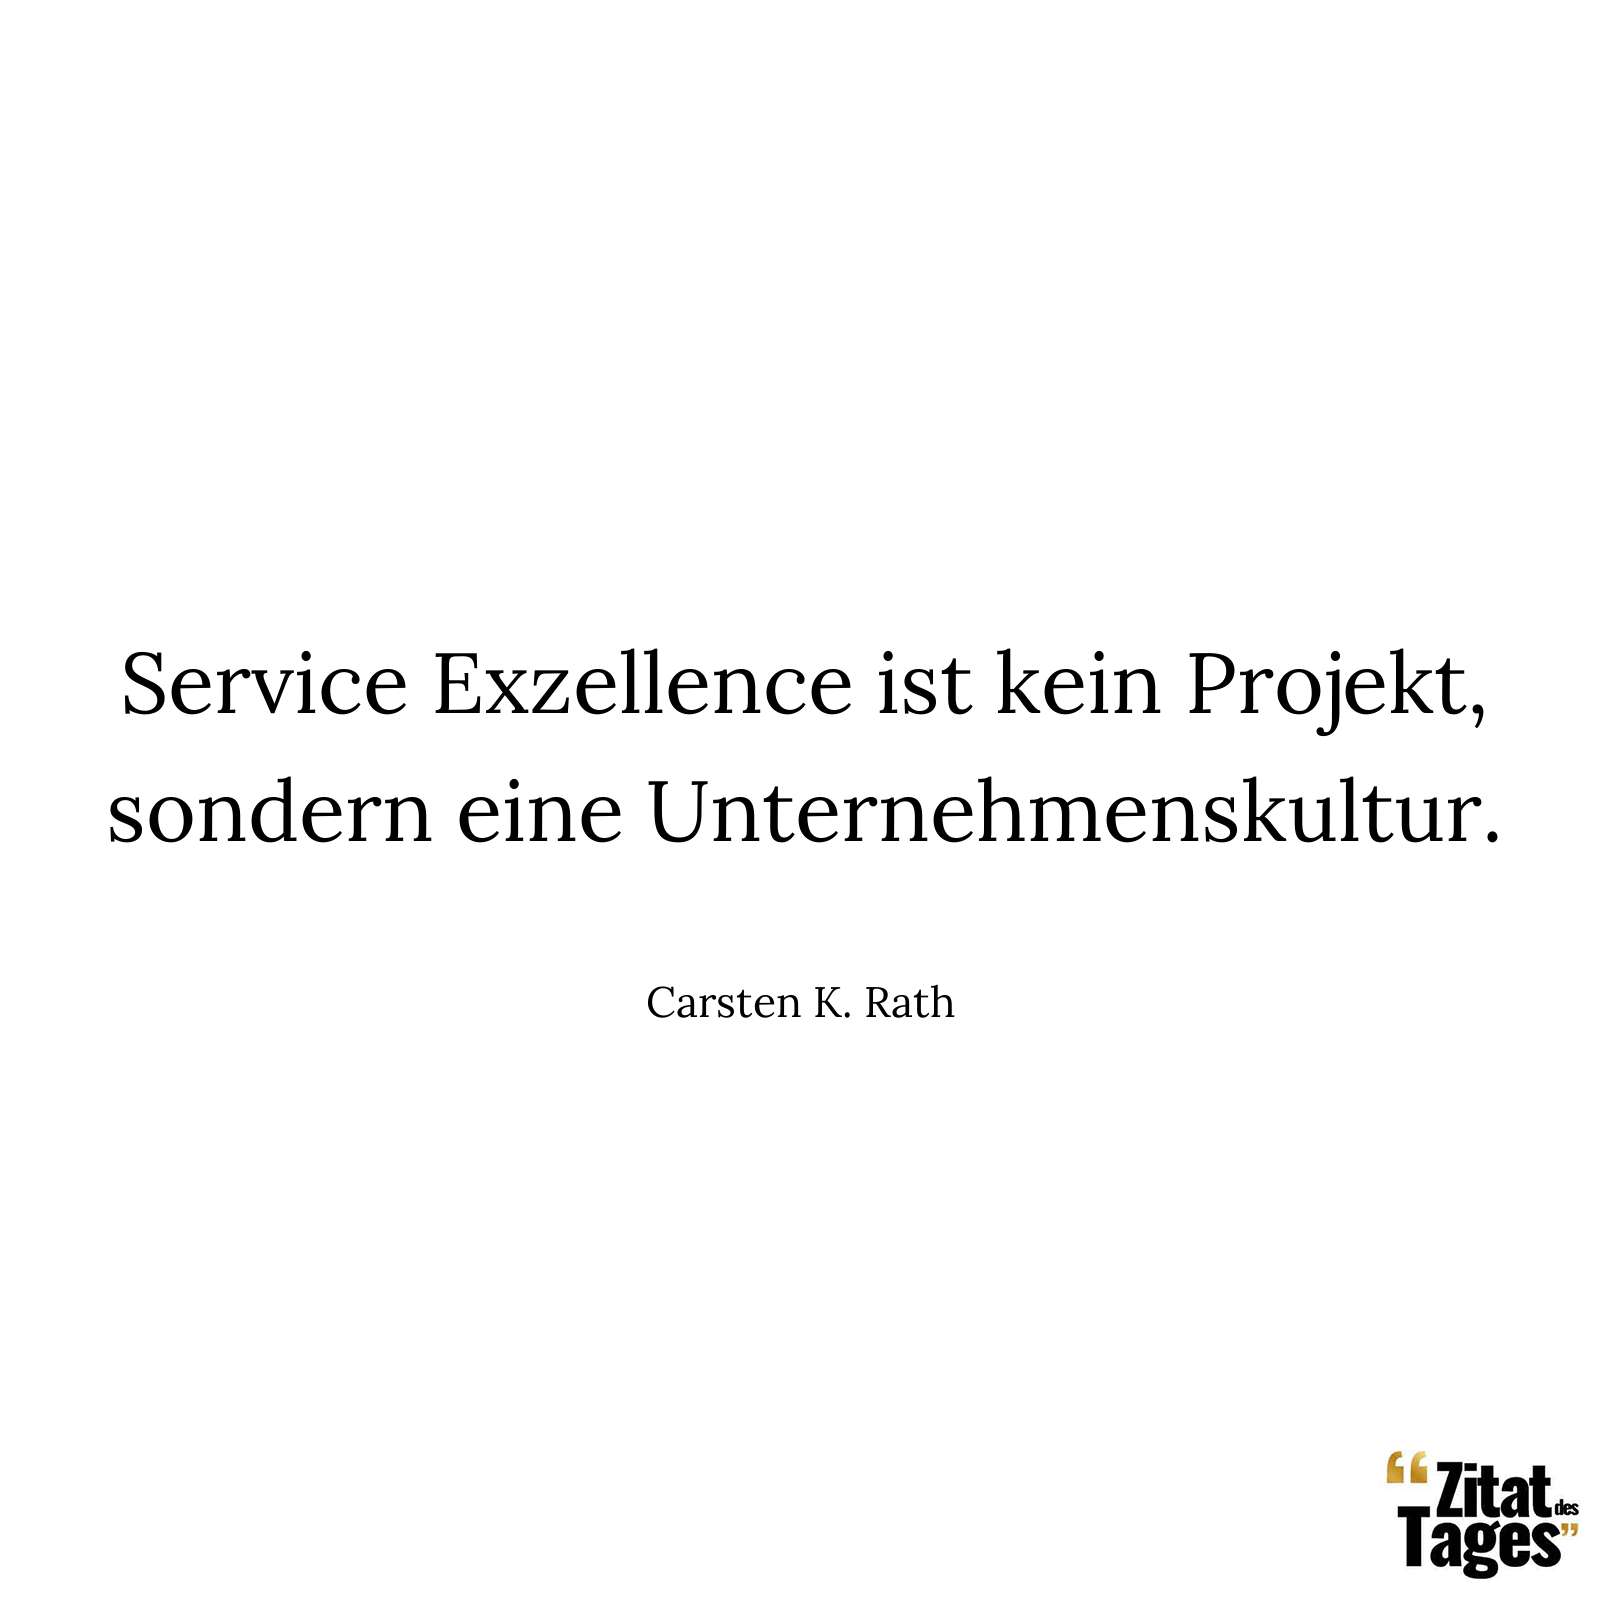 Service Exzellence ist kein Projekt, sondern eine Unternehmenskultur. - Carsten K. Rath